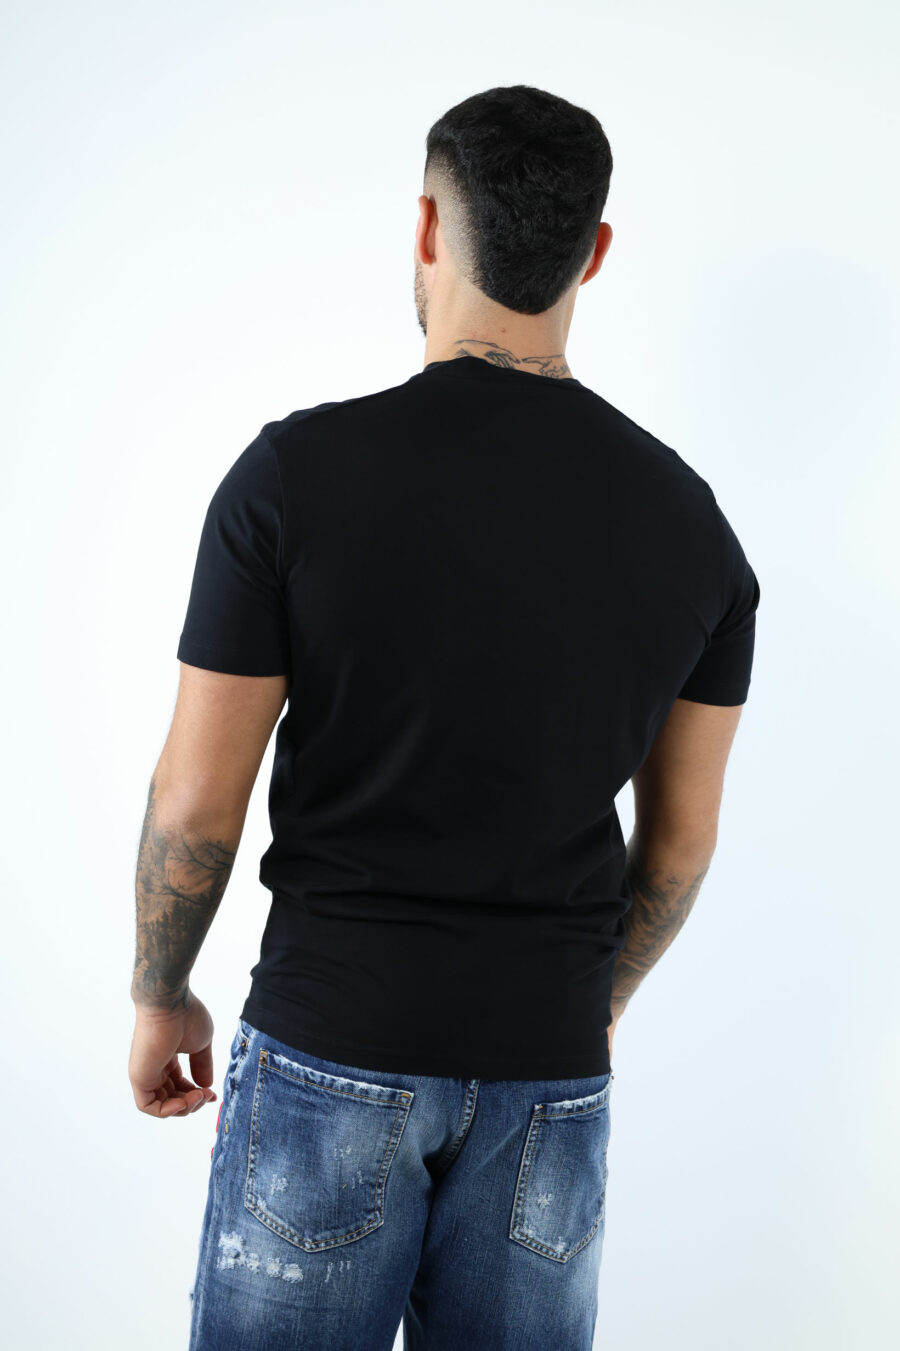 T-shirt preta com maxilogo "collegue league" - 106874